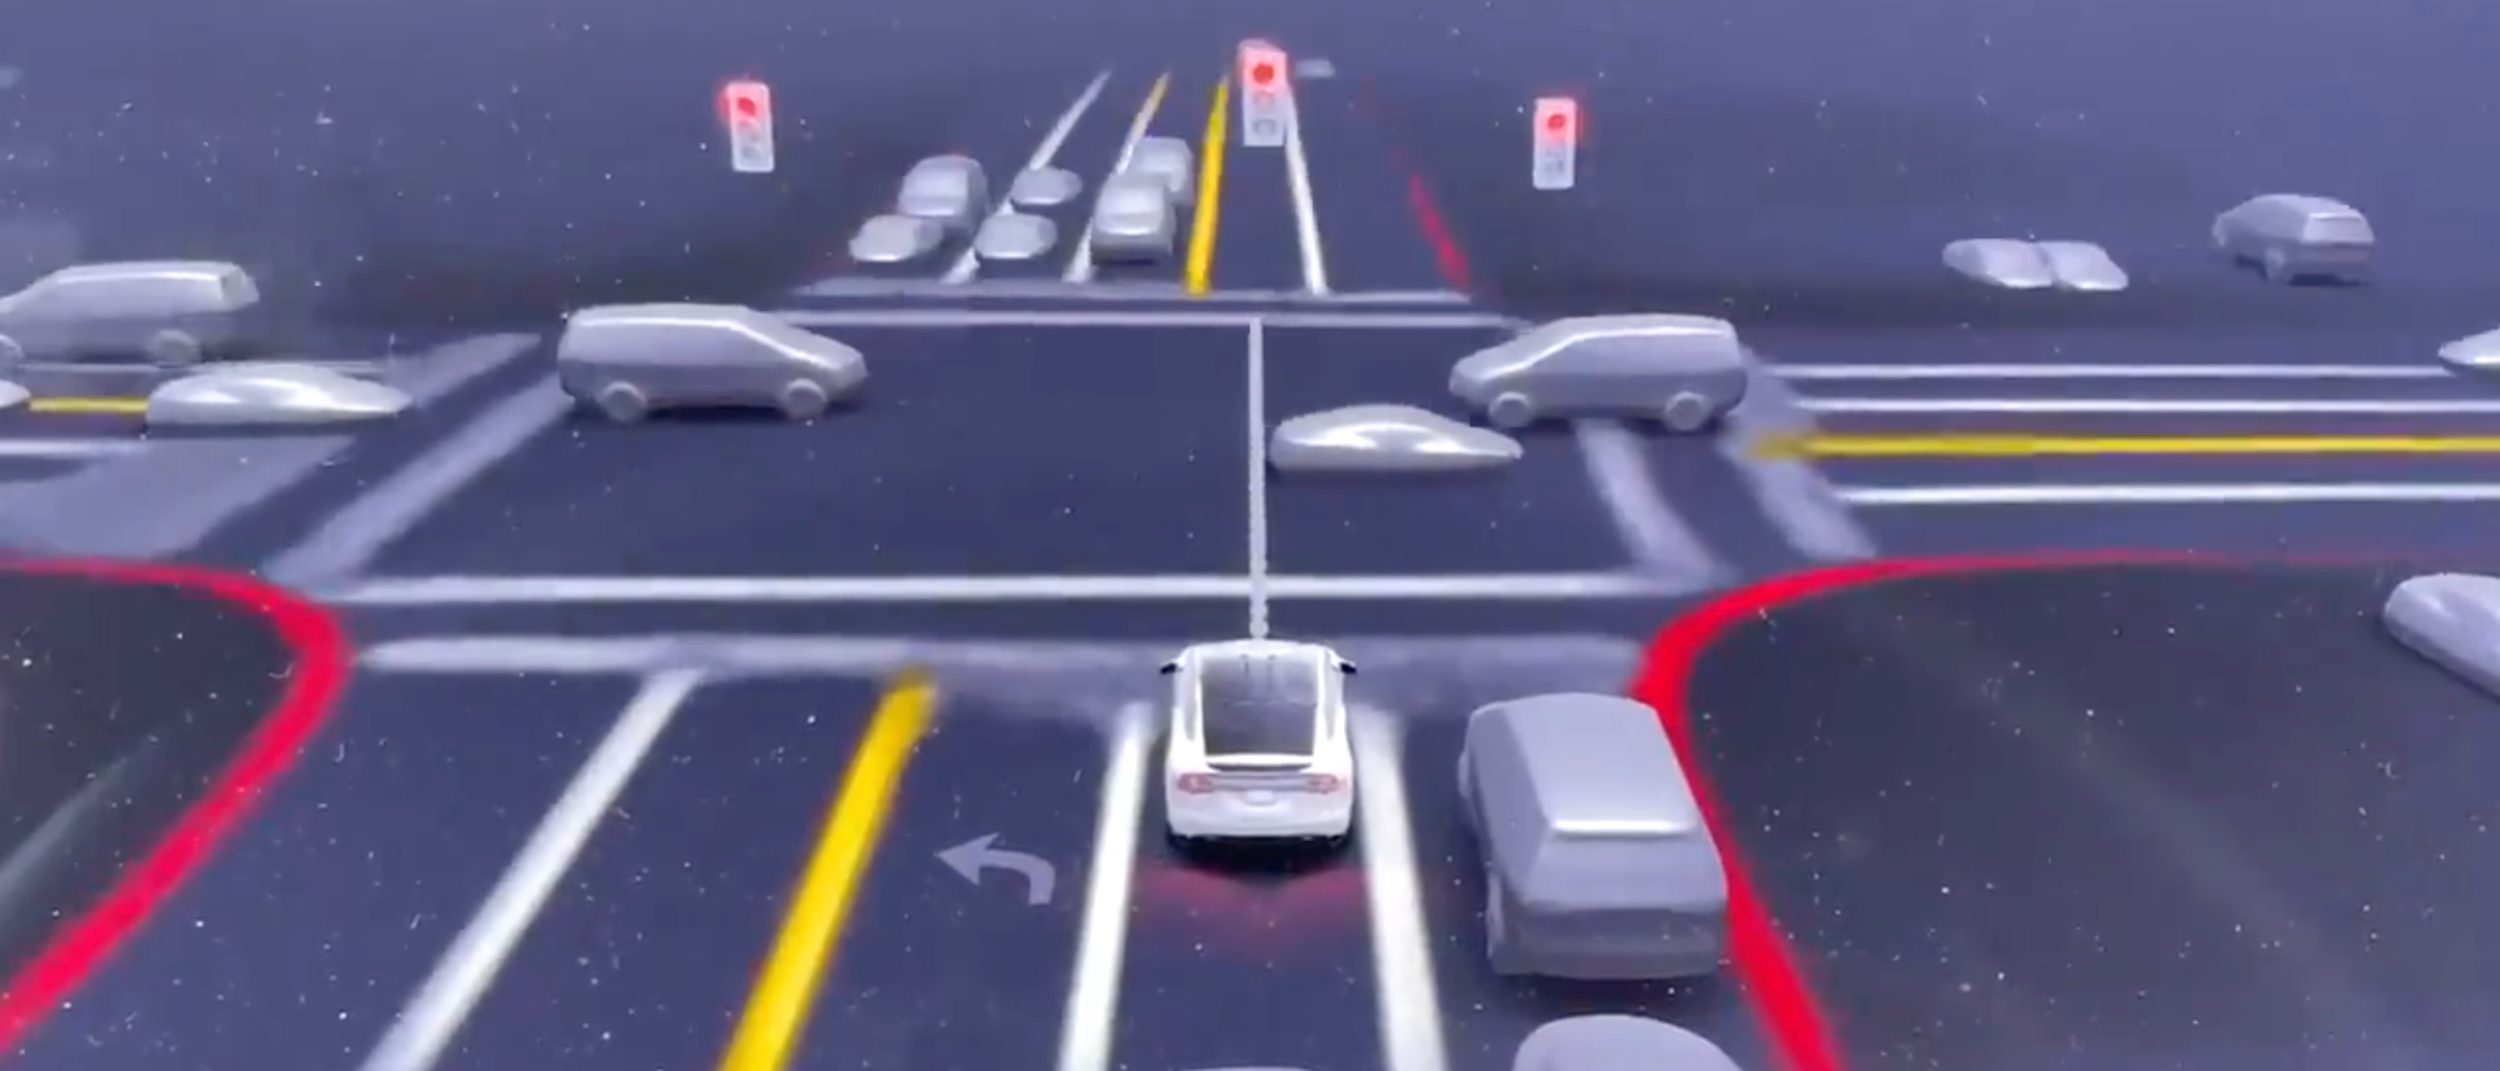 Full Self Driving : Tesla stoppe la bêta de son mode autonome en raison de problèmes logiciels